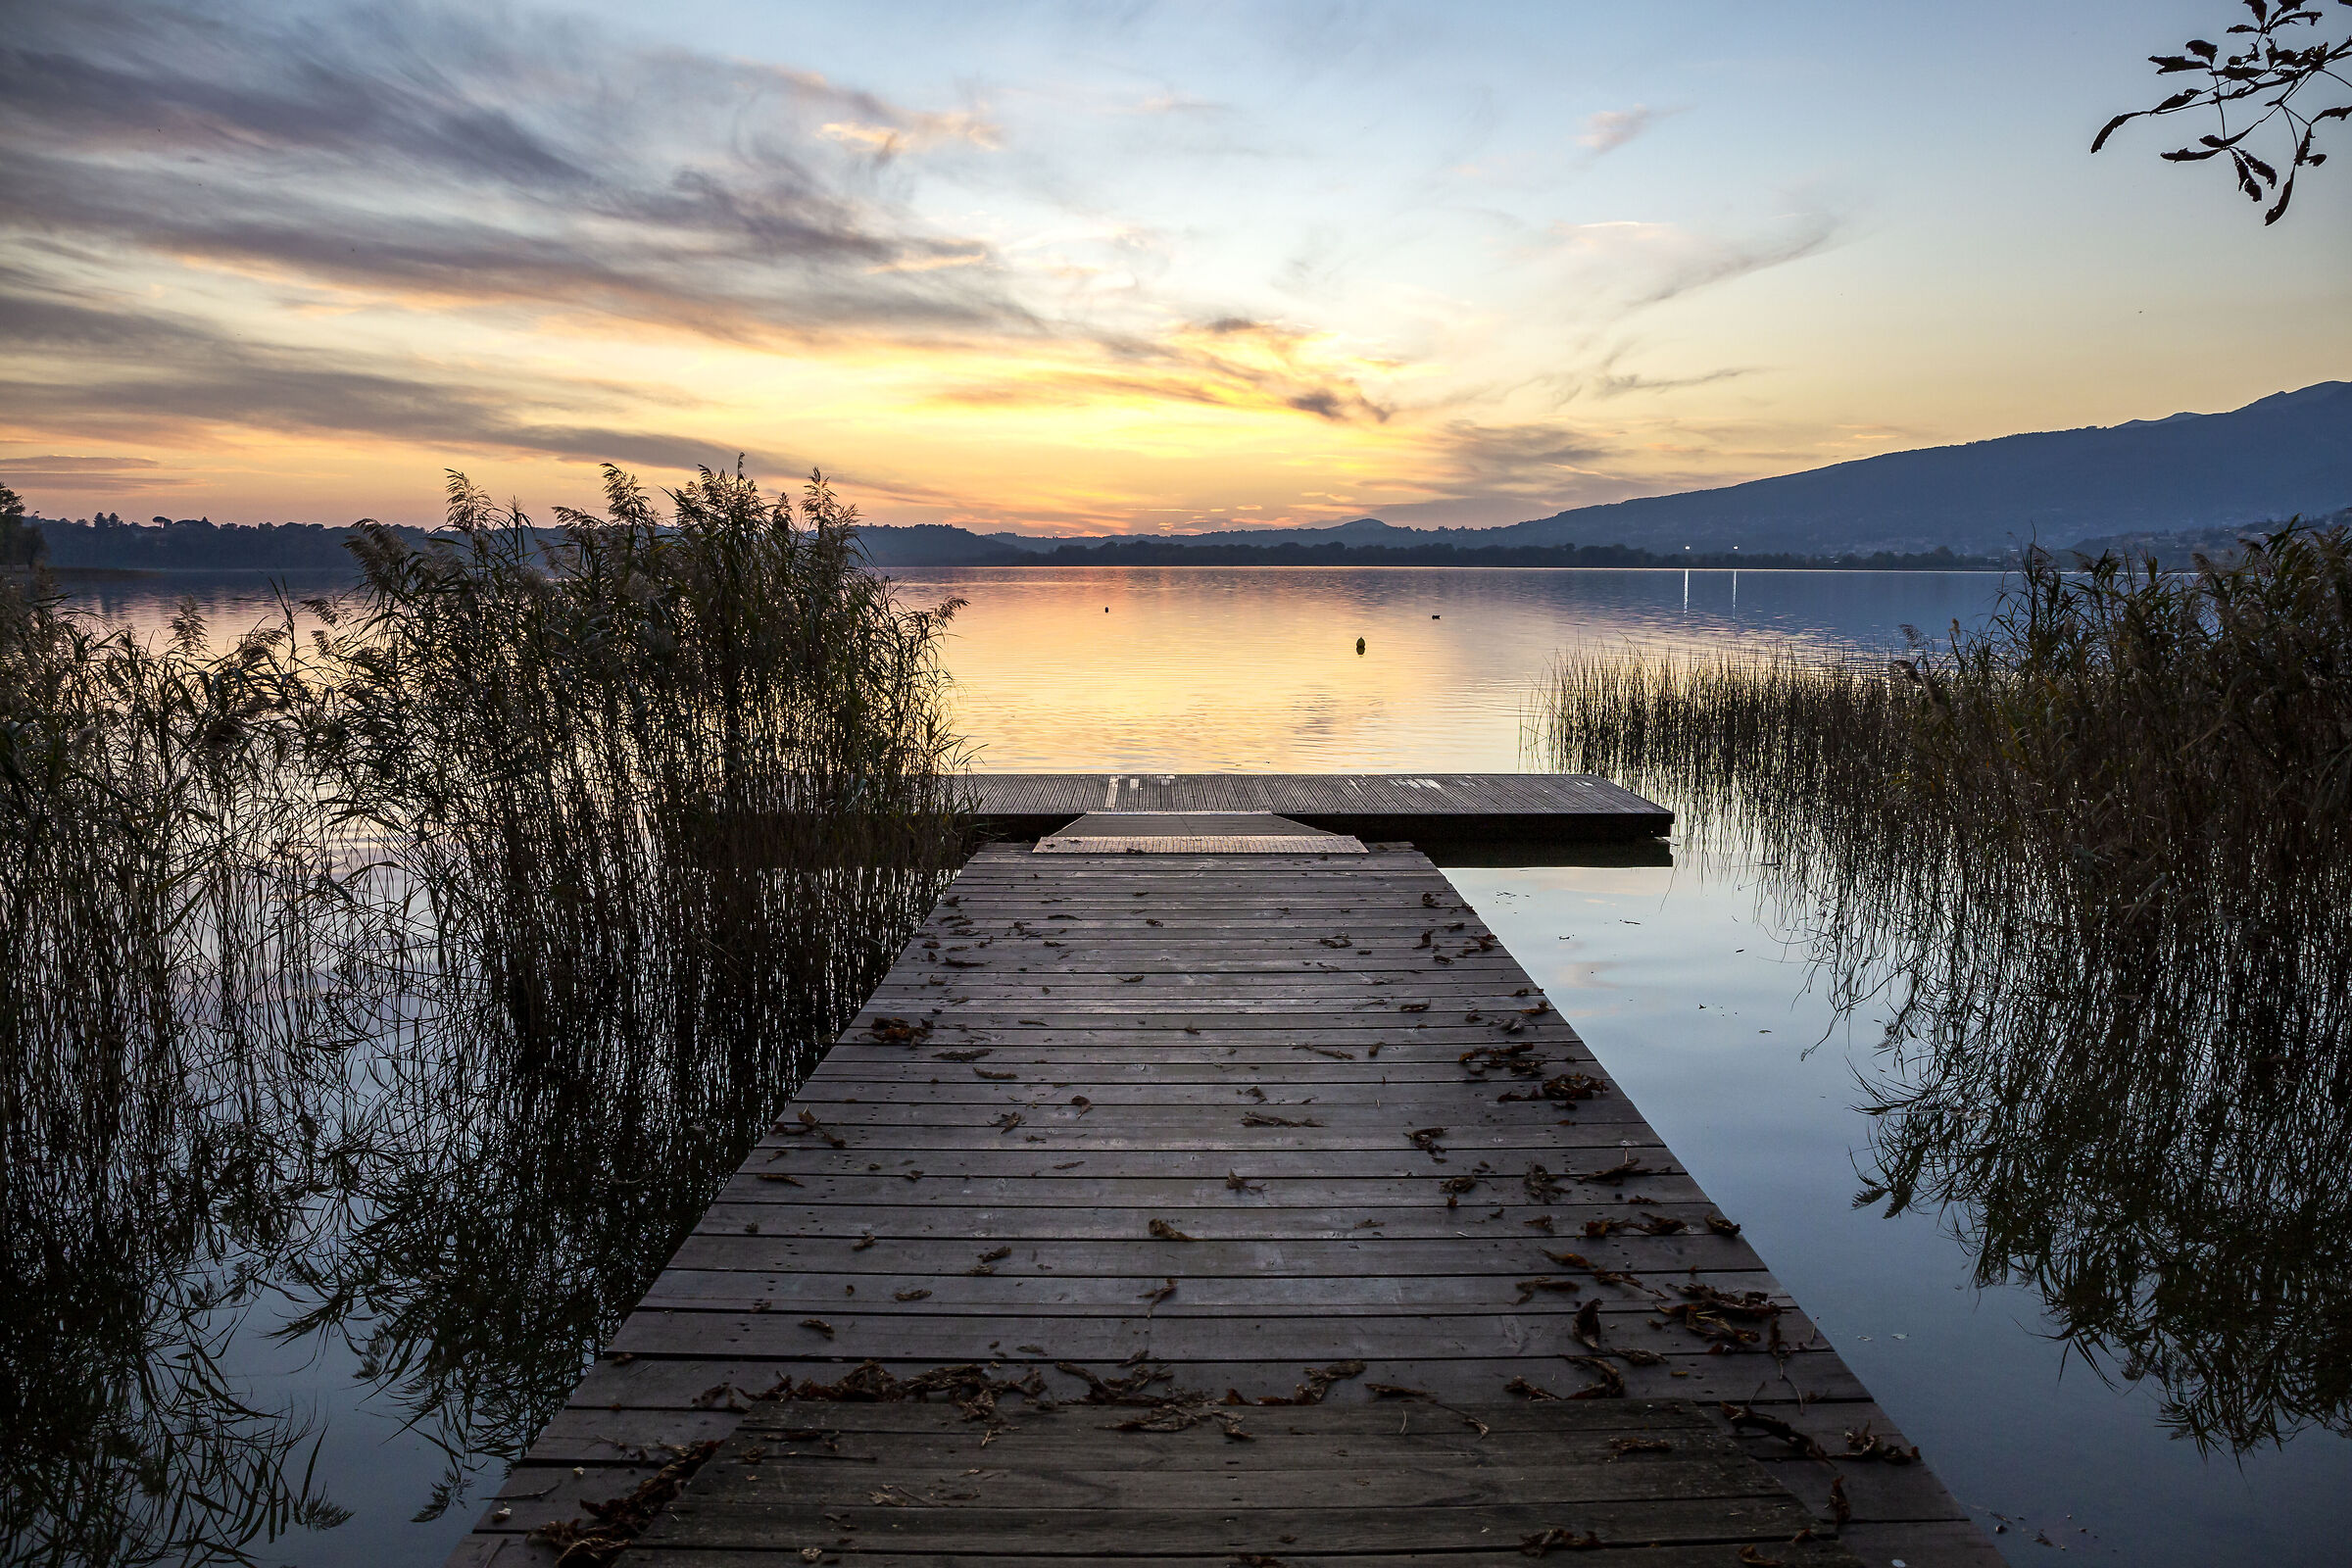 Lake Pusiano at sunset......